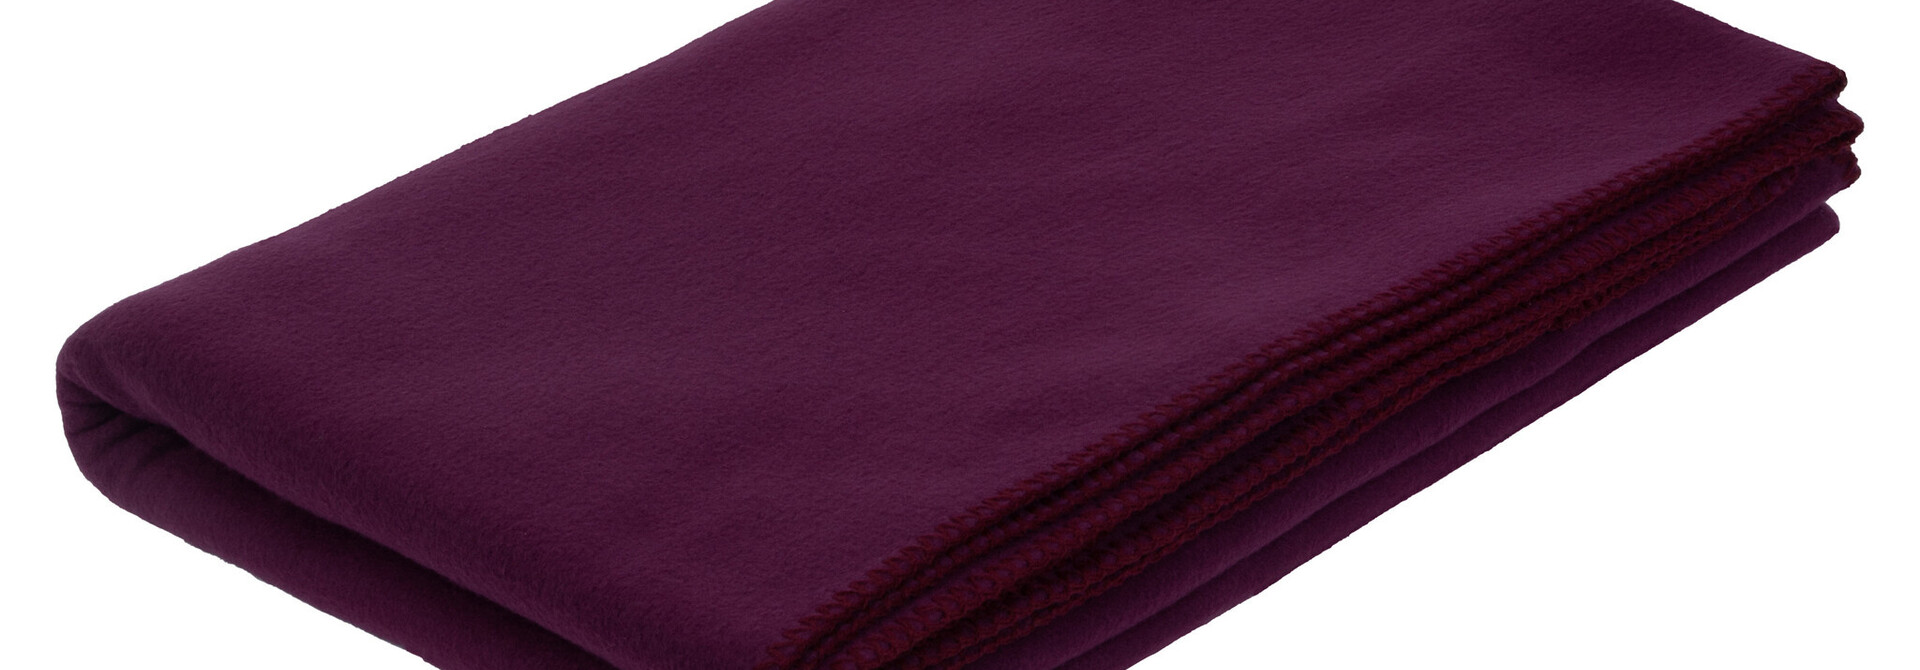 Yogisha Yoga Blanket Fleece